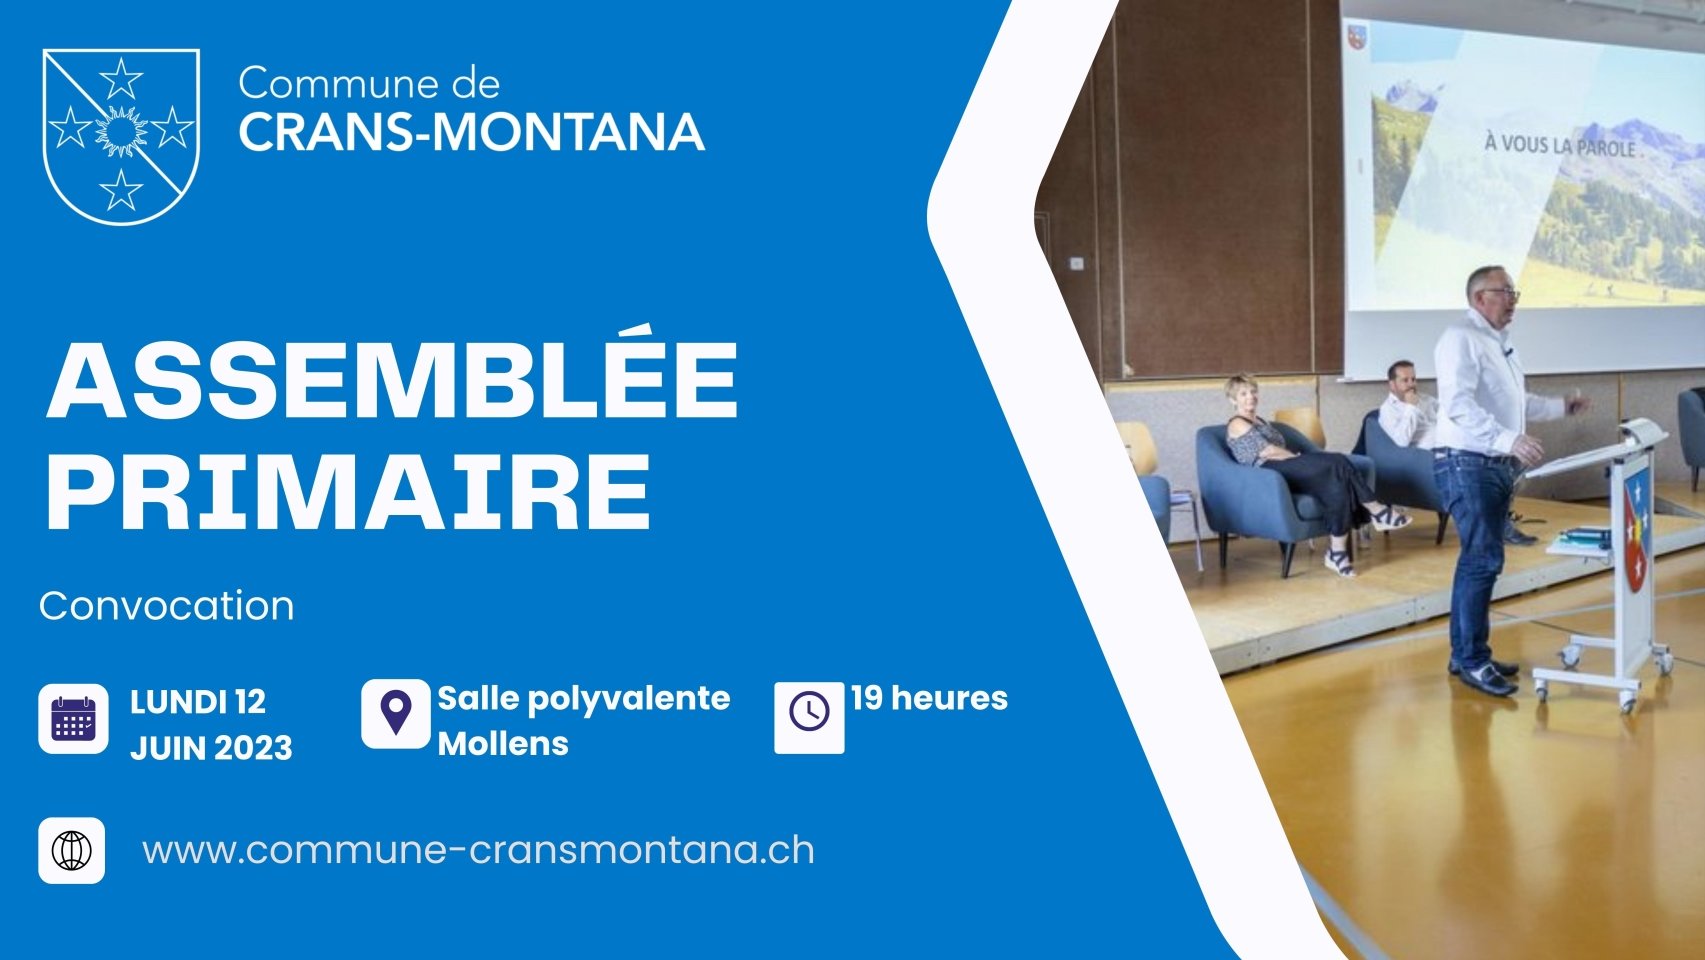 Convocation de l'Assemblée primaire de la Commune de Crans-Montana (12 juin 2023)